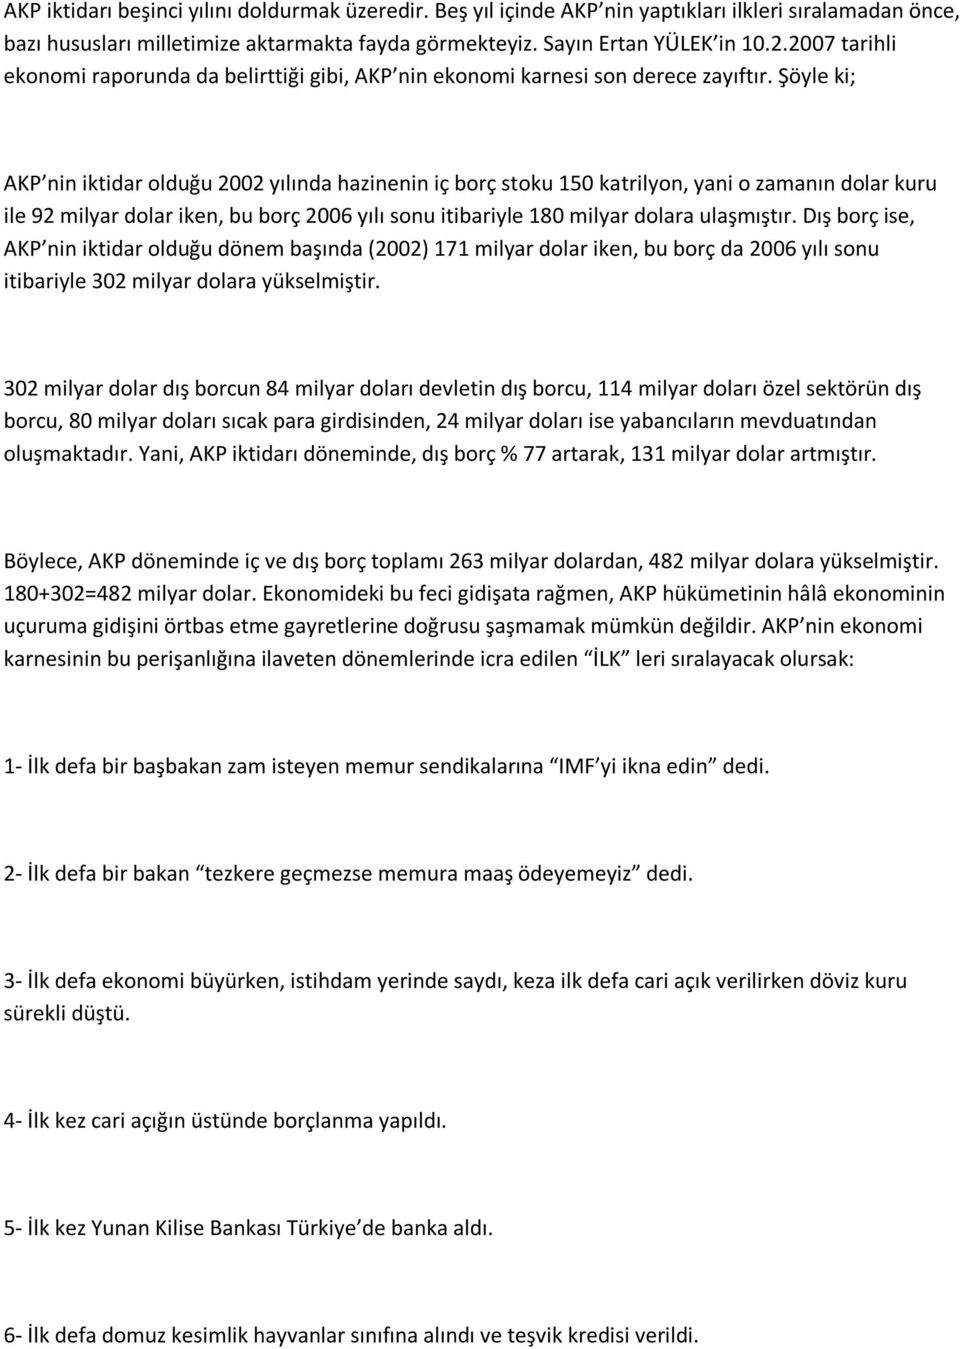 Şöyle ki; AKP nin iktidar olduğu 2002 yılında hazinenin iç borç stoku 150 katrilyon, yani o zamanın dolar kuru ile 92 milyar dolar iken, bu borç 2006 yılı sonu itibariyle 180 milyar dolara ulaşmıştır.